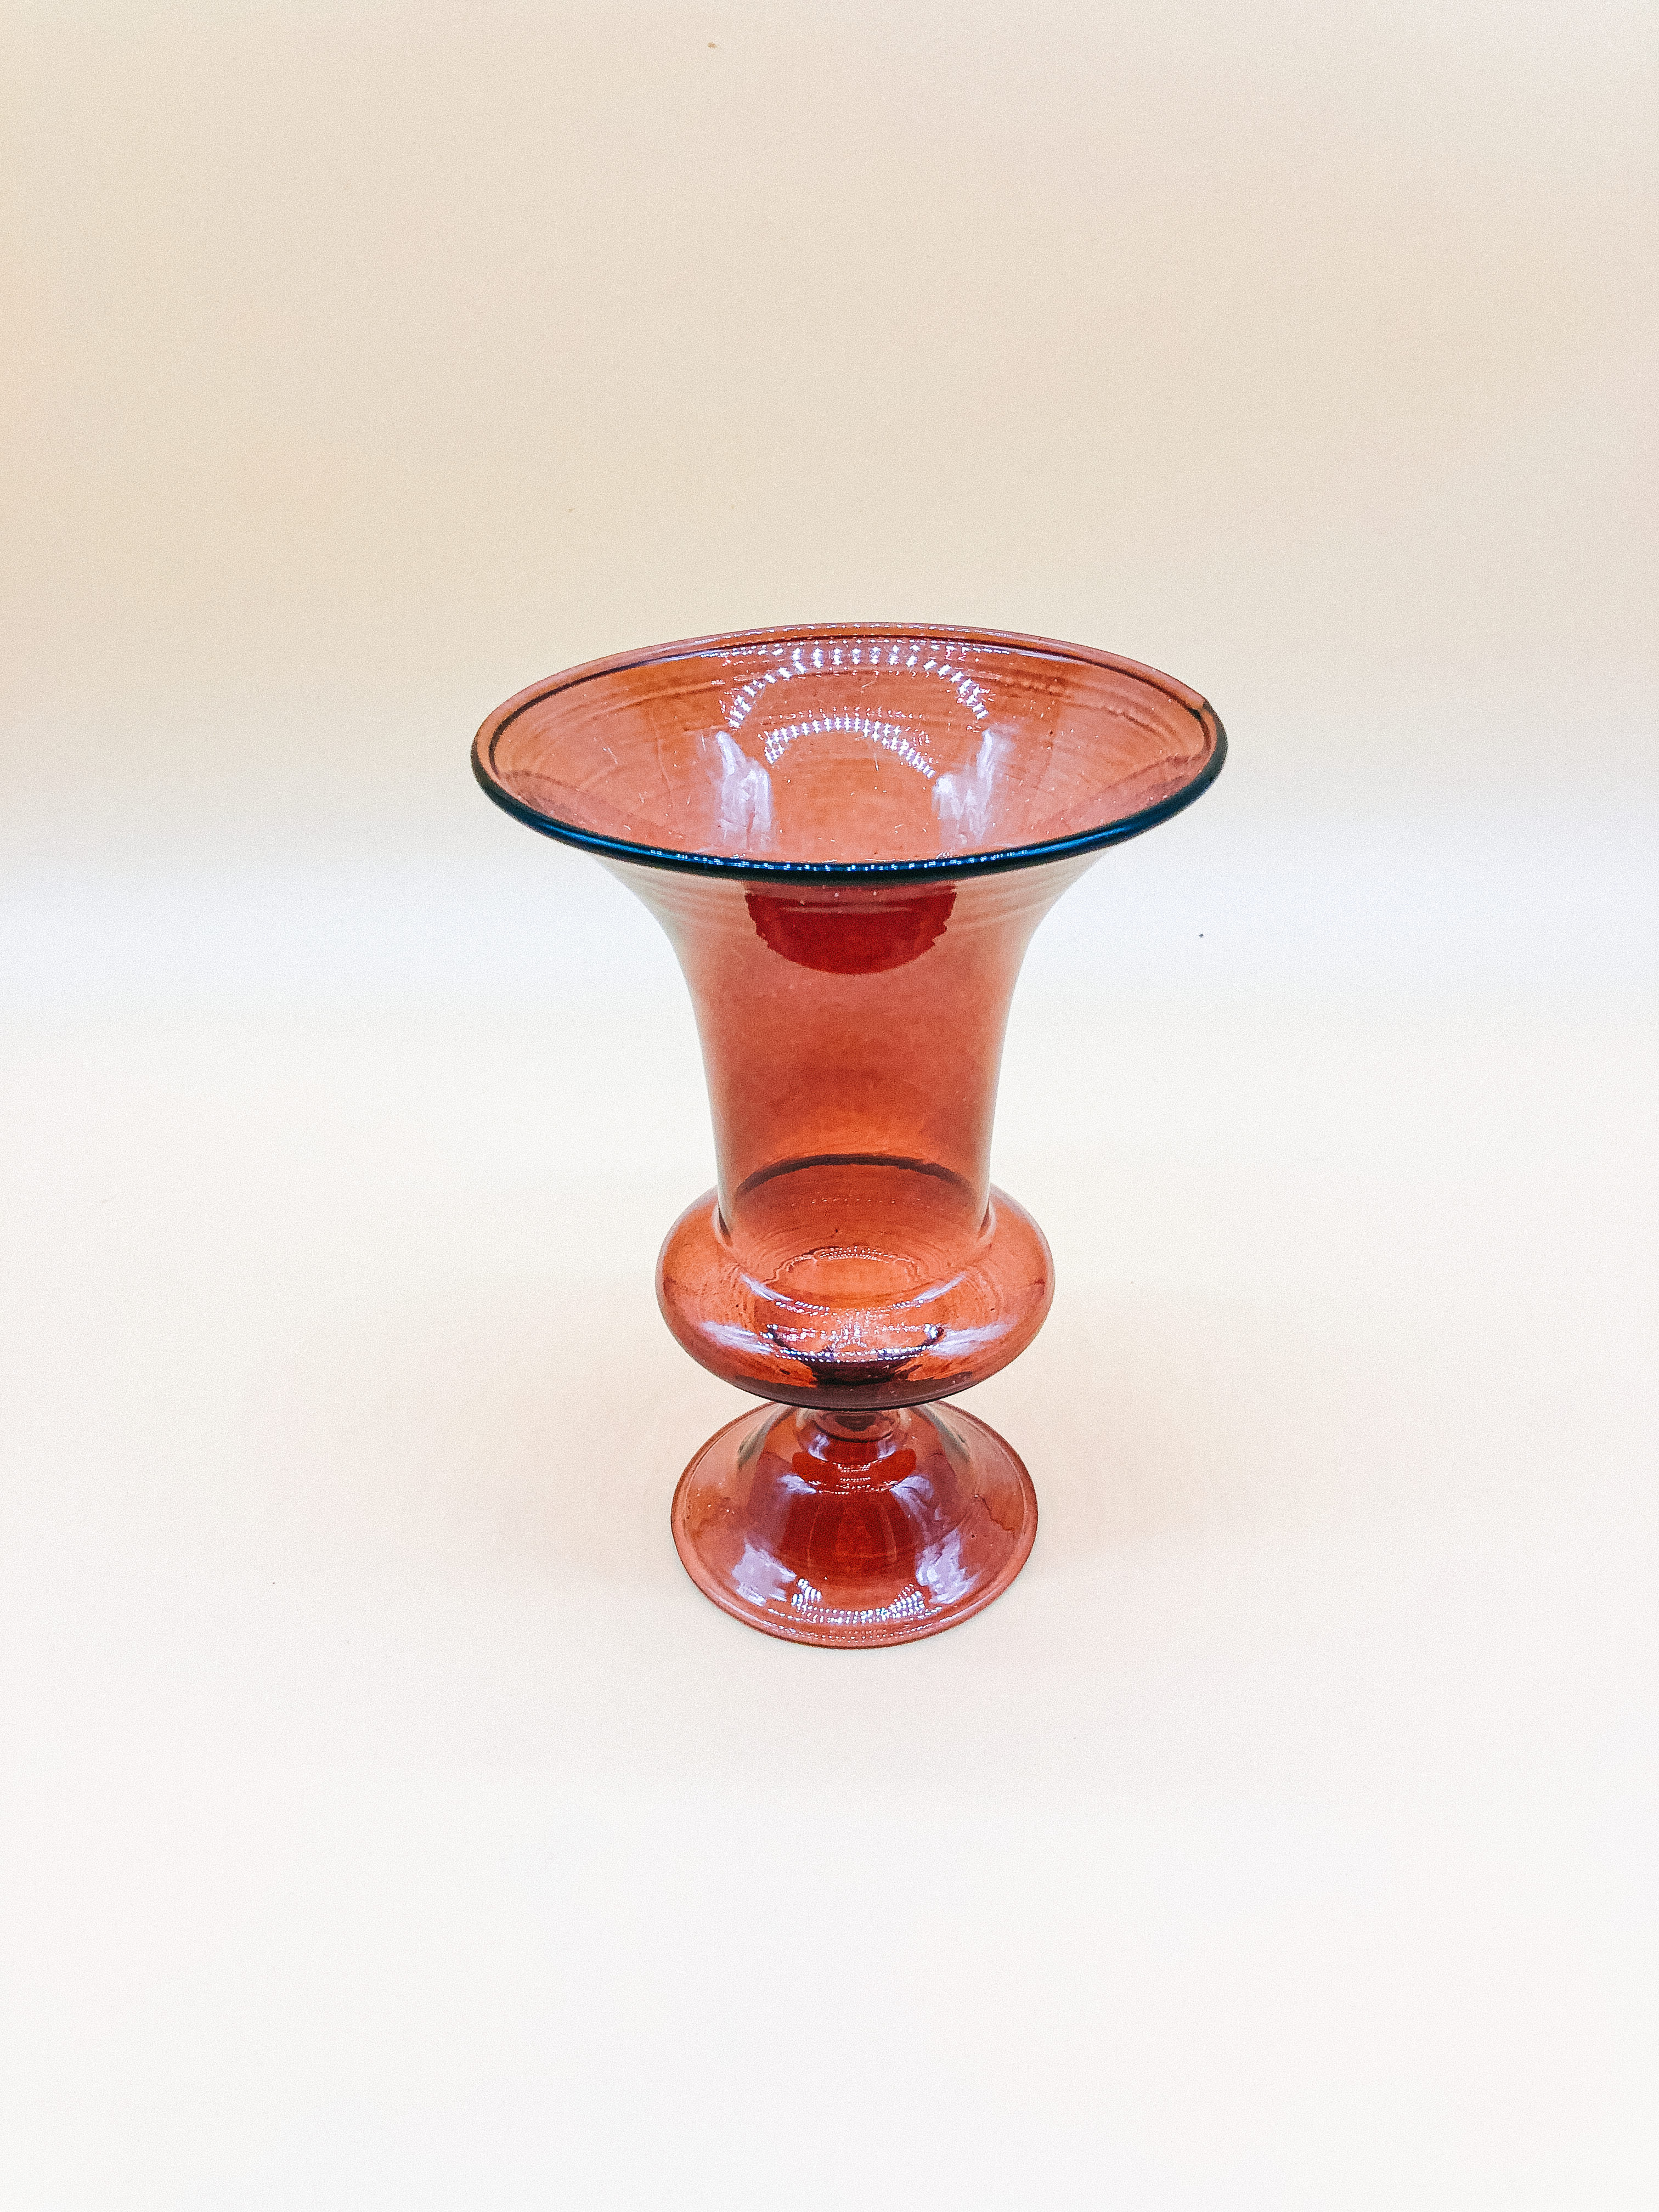 The Bordeaux Vase by PROSE Botanical